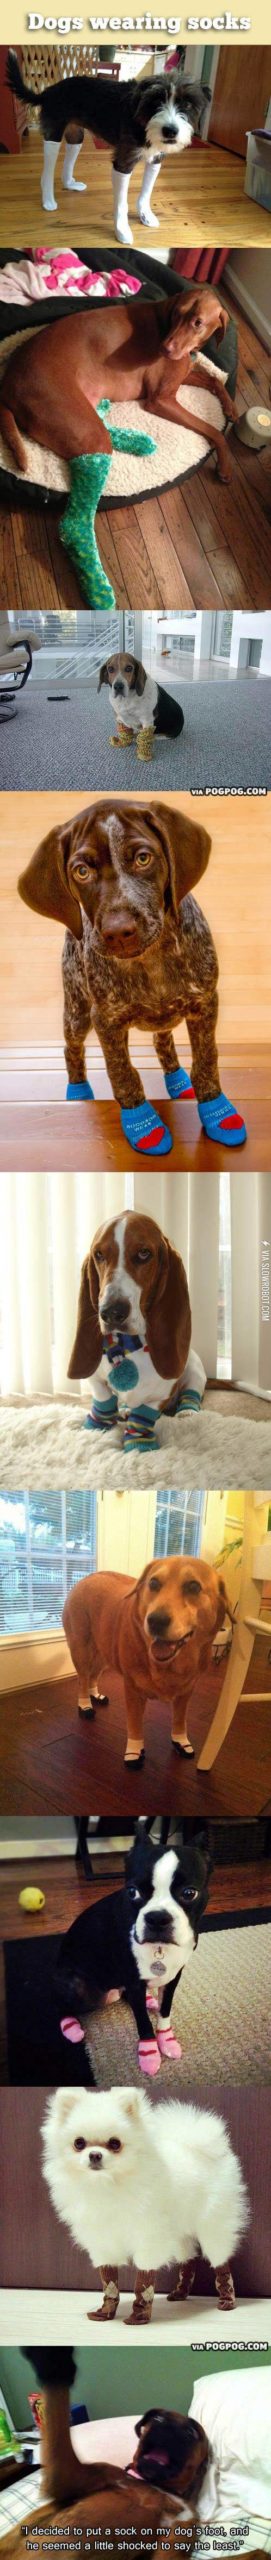 Dogs+wearing+socks.